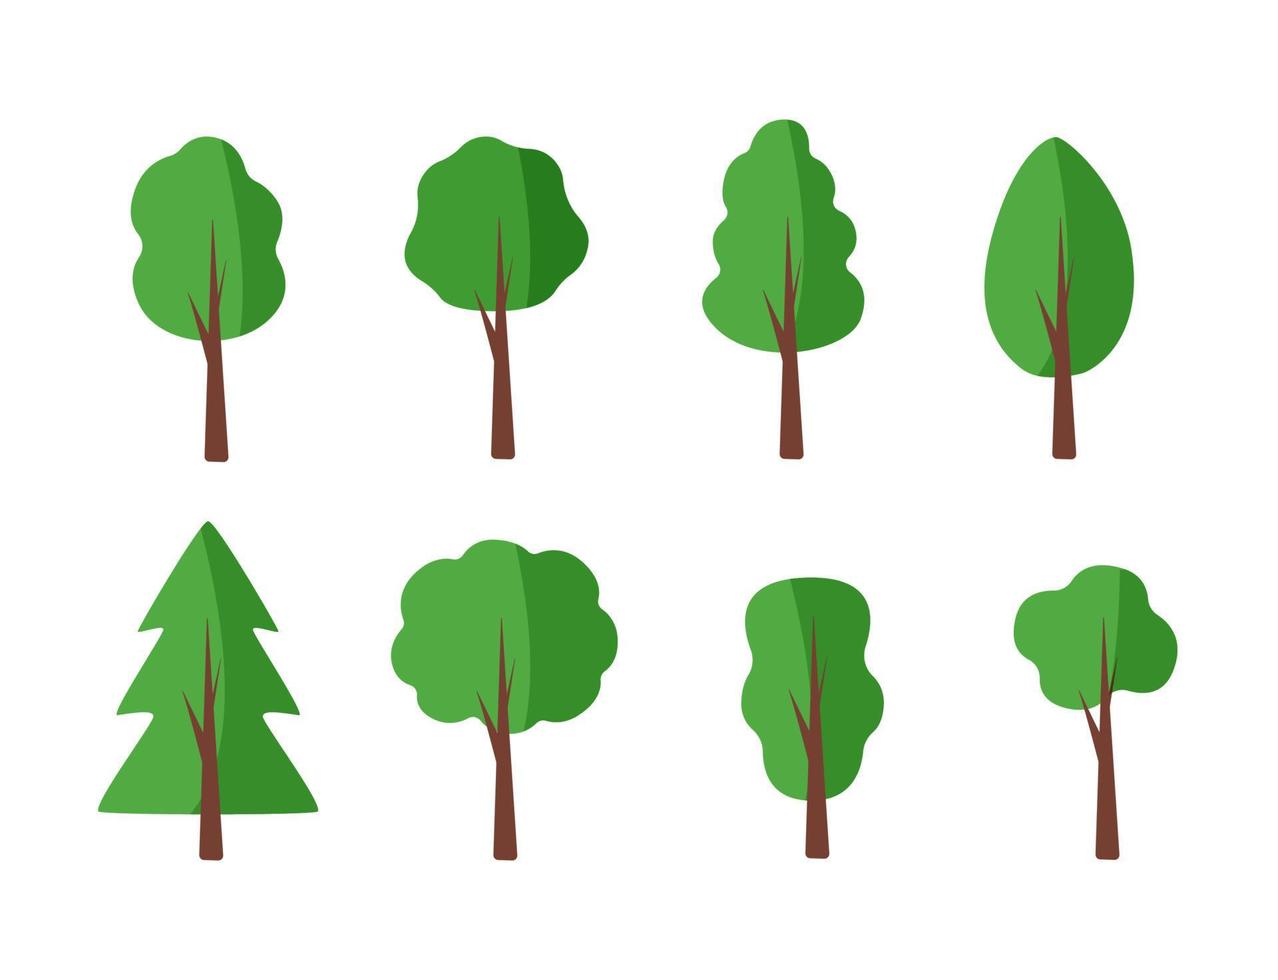 reeks van bomen met een groen kroon, vector illustratie van een boom icoon.